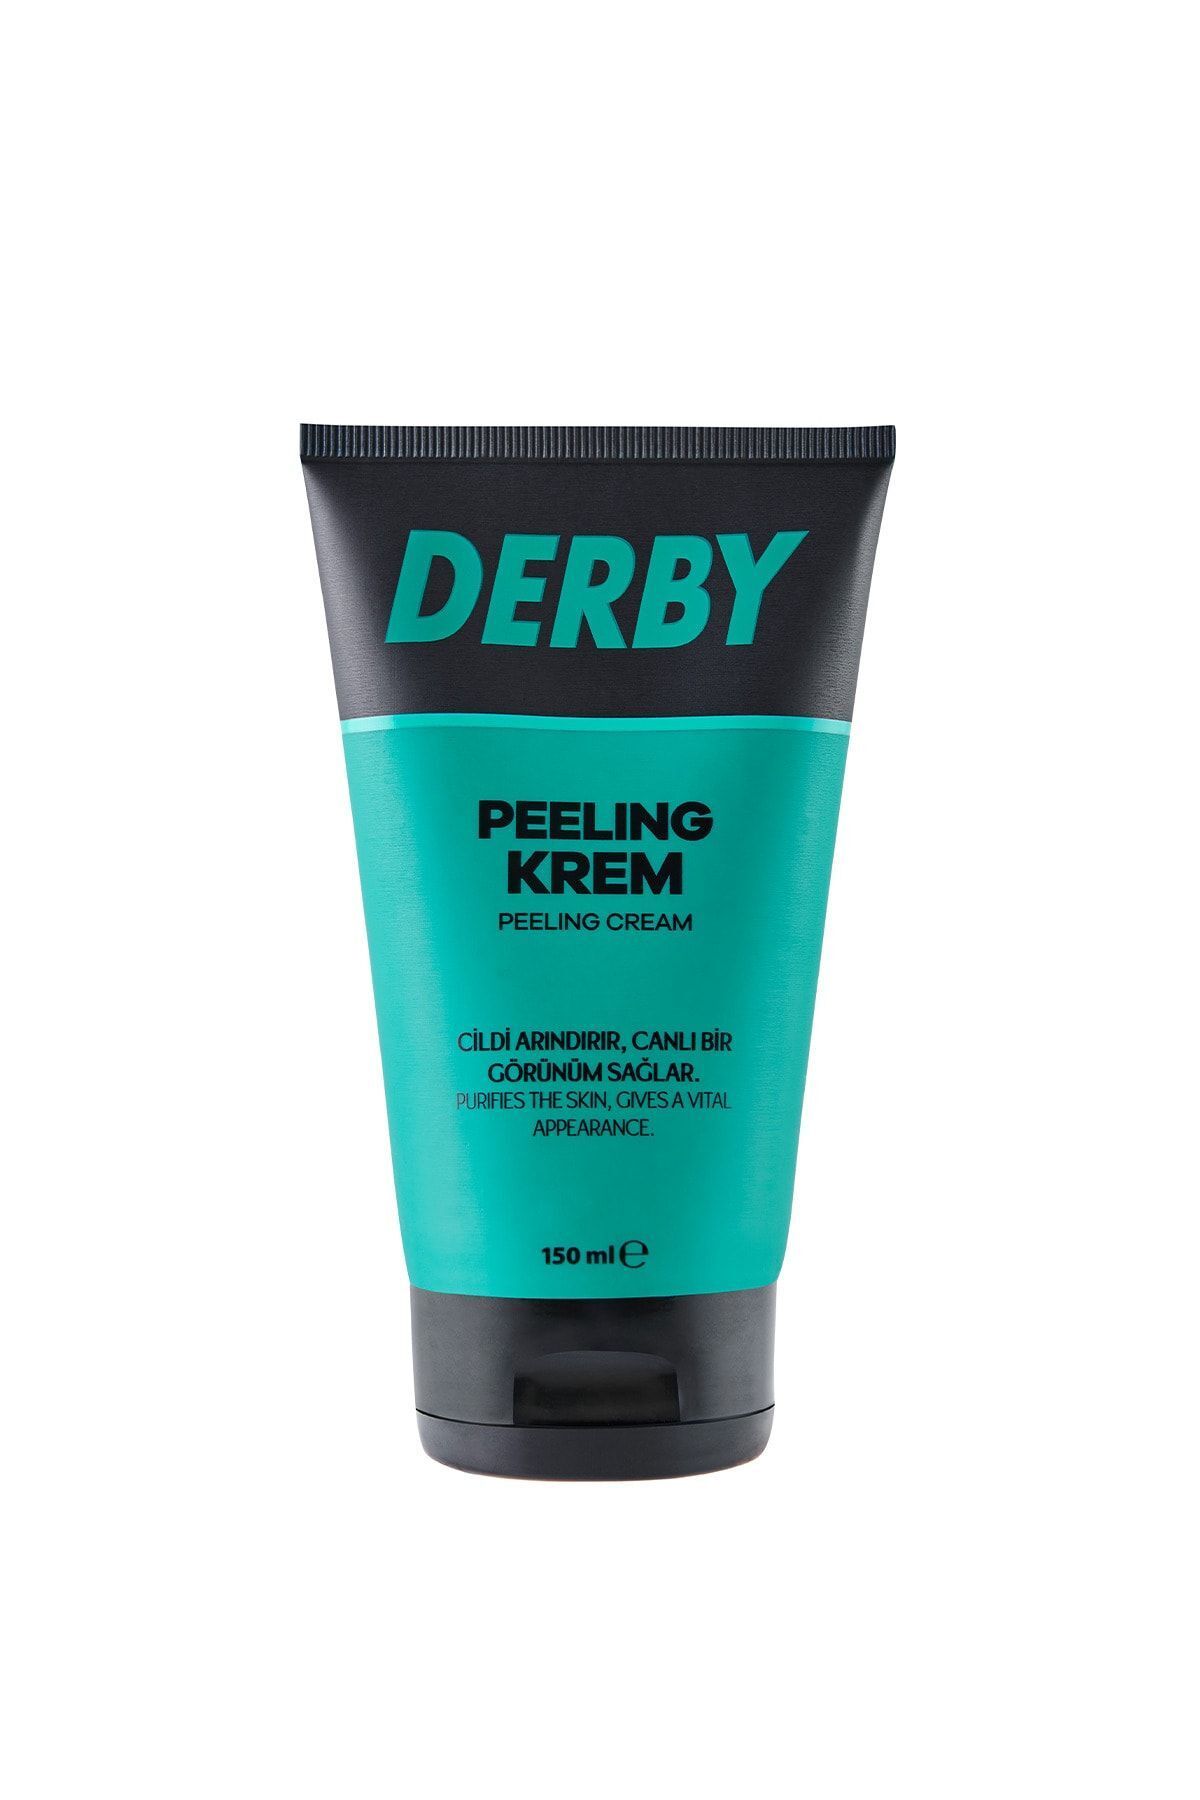 Derby Peeling Krem 150 ml